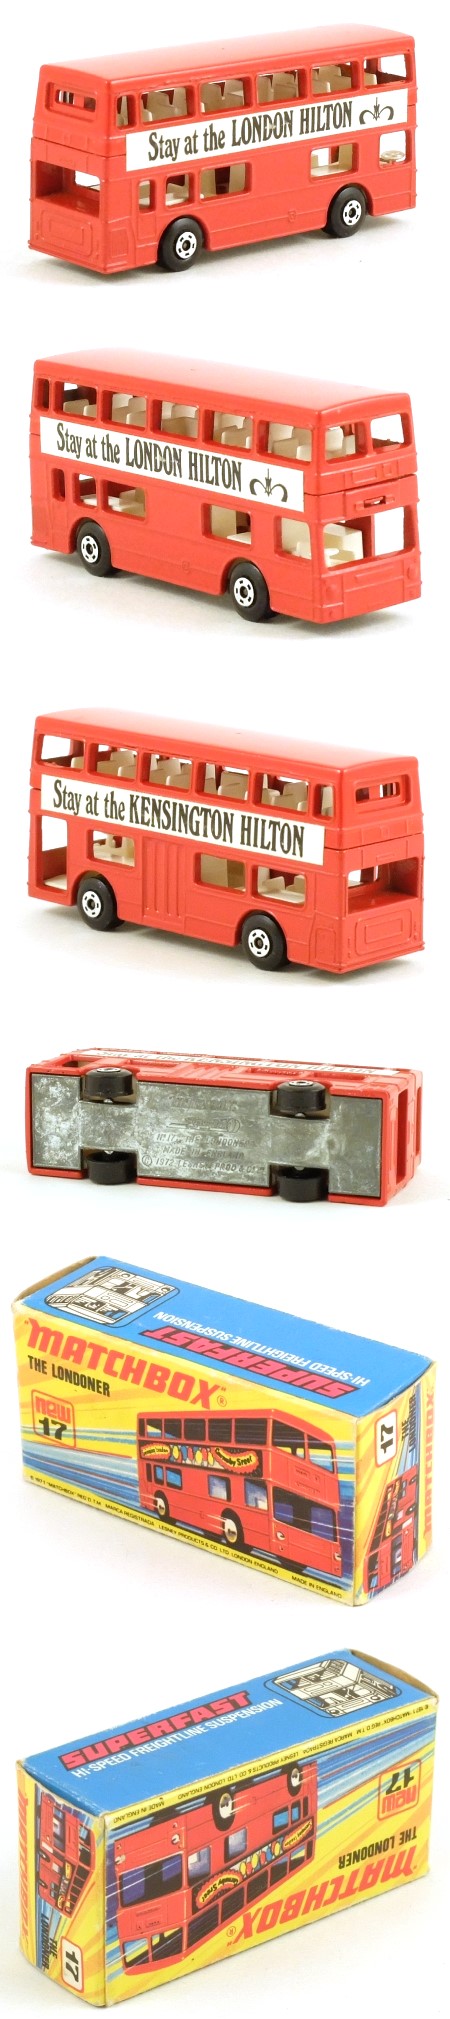 MB17 Londoner Bus 'London Kensington Hilton'